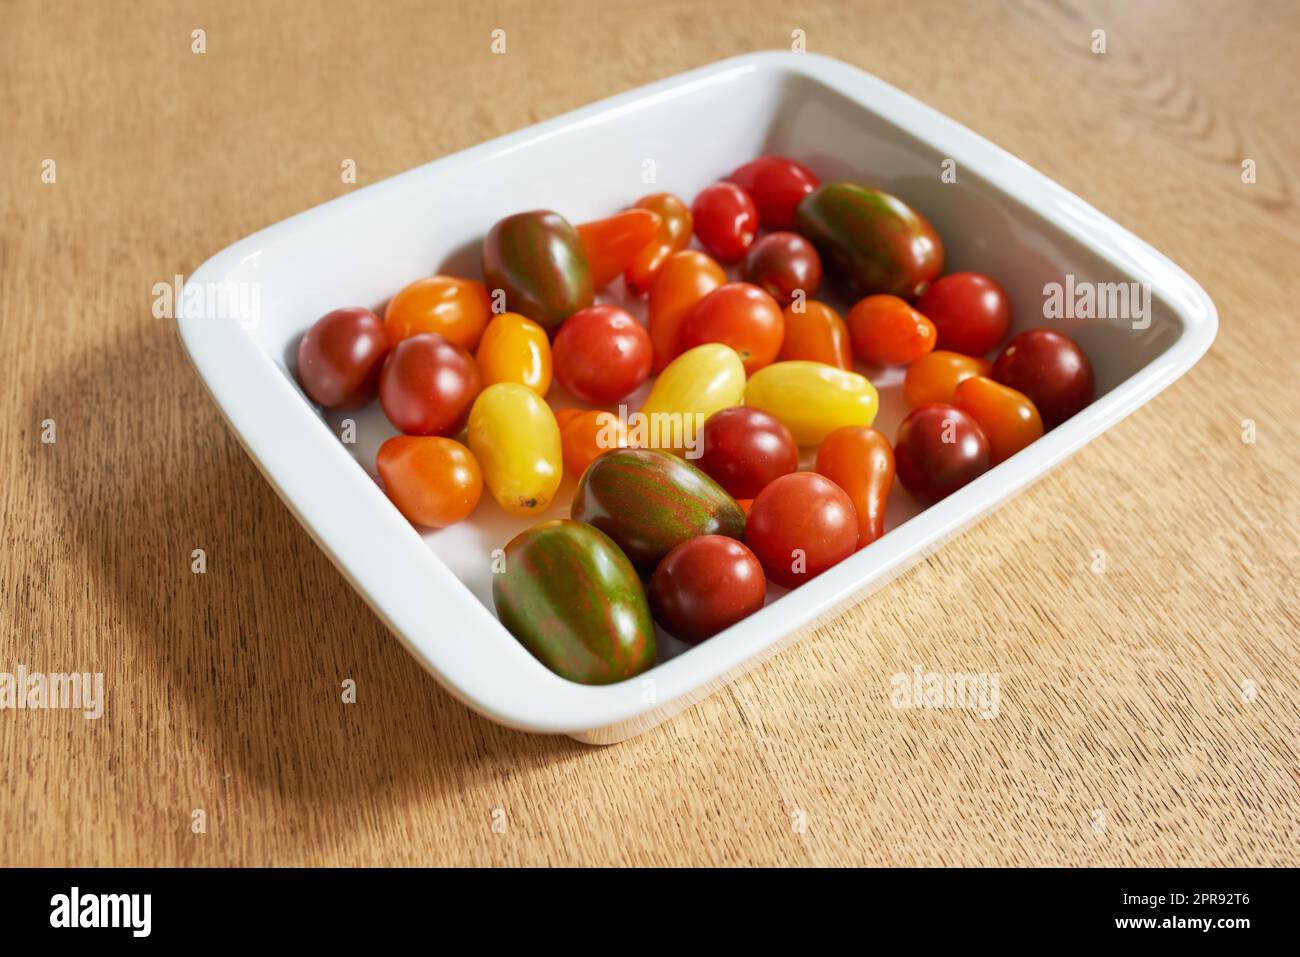 Essen. Nahaufnahme von roma oder Kirschtomaten in einer Glasschüssel serviert auf einem Holztisch für Diät, gesunde Salate und Ernährung. Frisches, biologisches Obst, das im Hausgarten oder landwirtschaftlichen Betrieb gezüchtet wird. Stockfoto